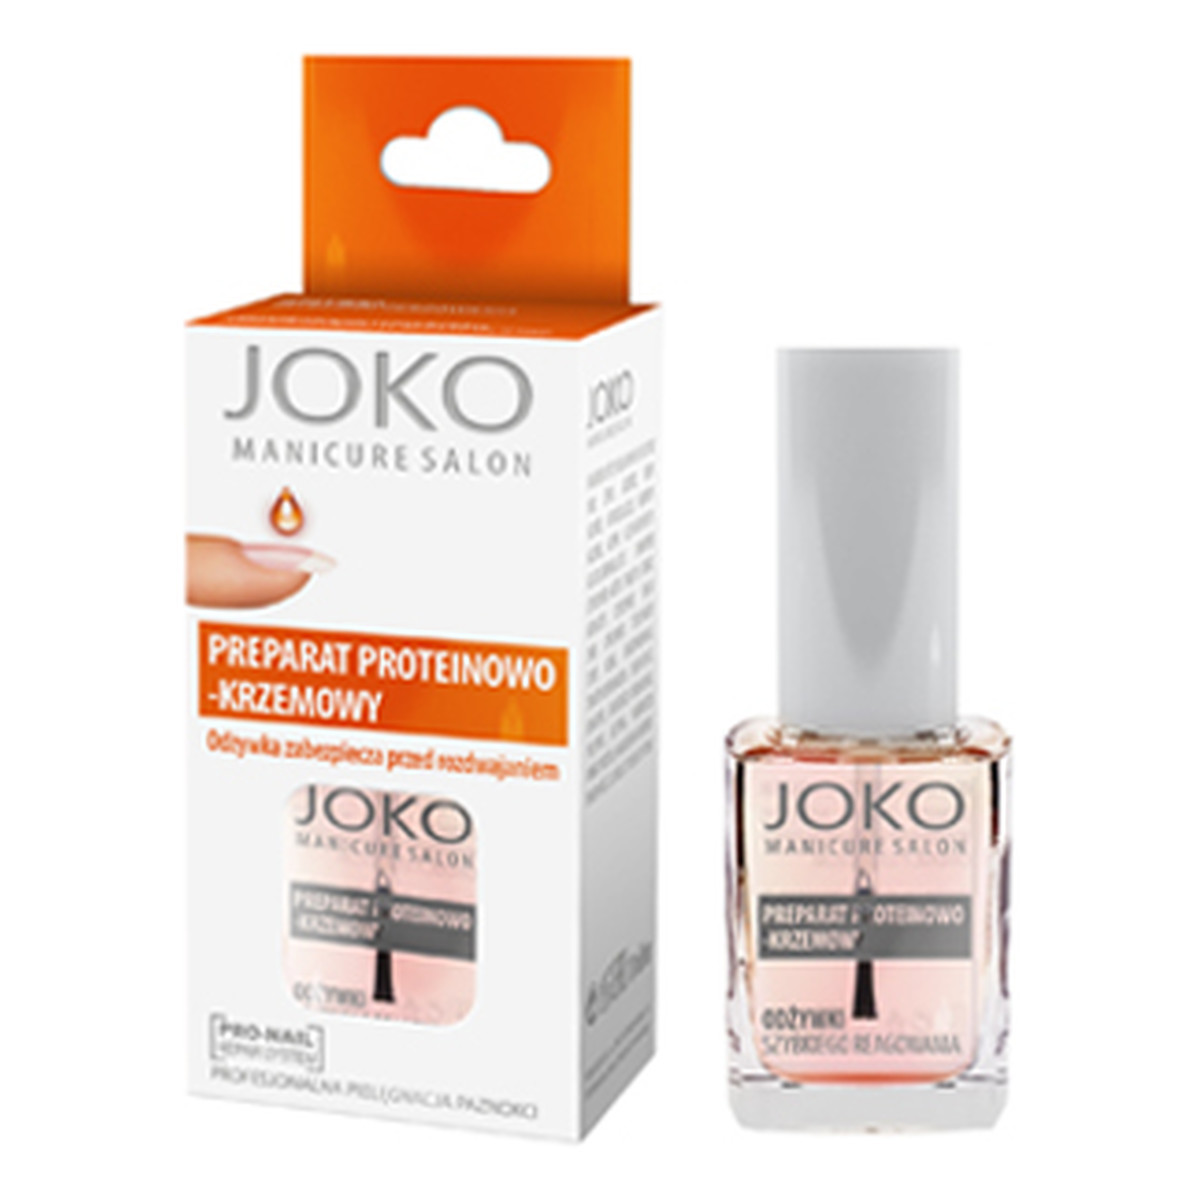 Joko Manicure Salon Preparat proteinowo-krzemowy przeciw rozdwajaniu paznokci 10ml